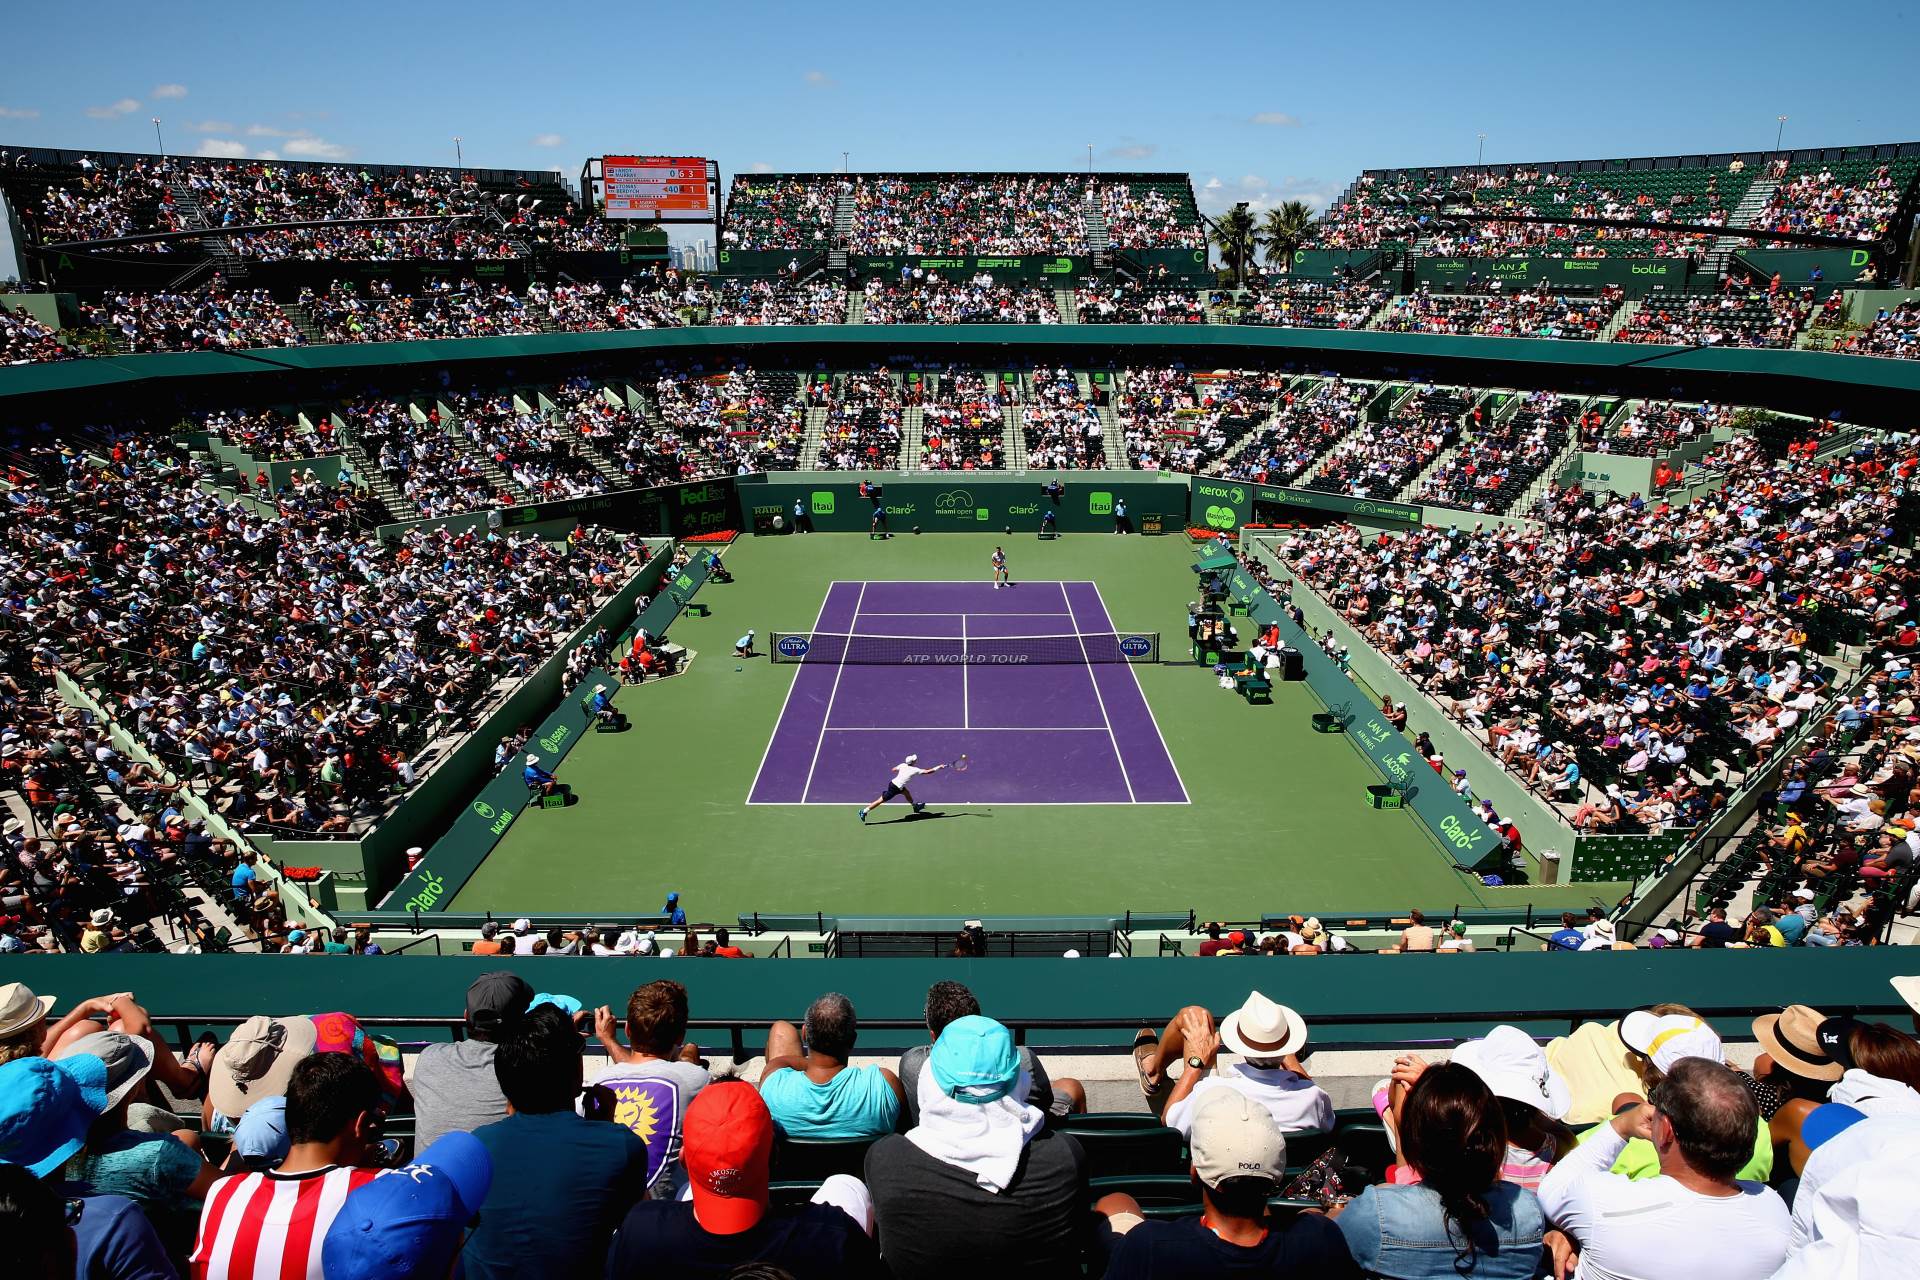  Zvanično: Bez tenisa najranije do 13. jula, bodovi se "zamrzavaju" 